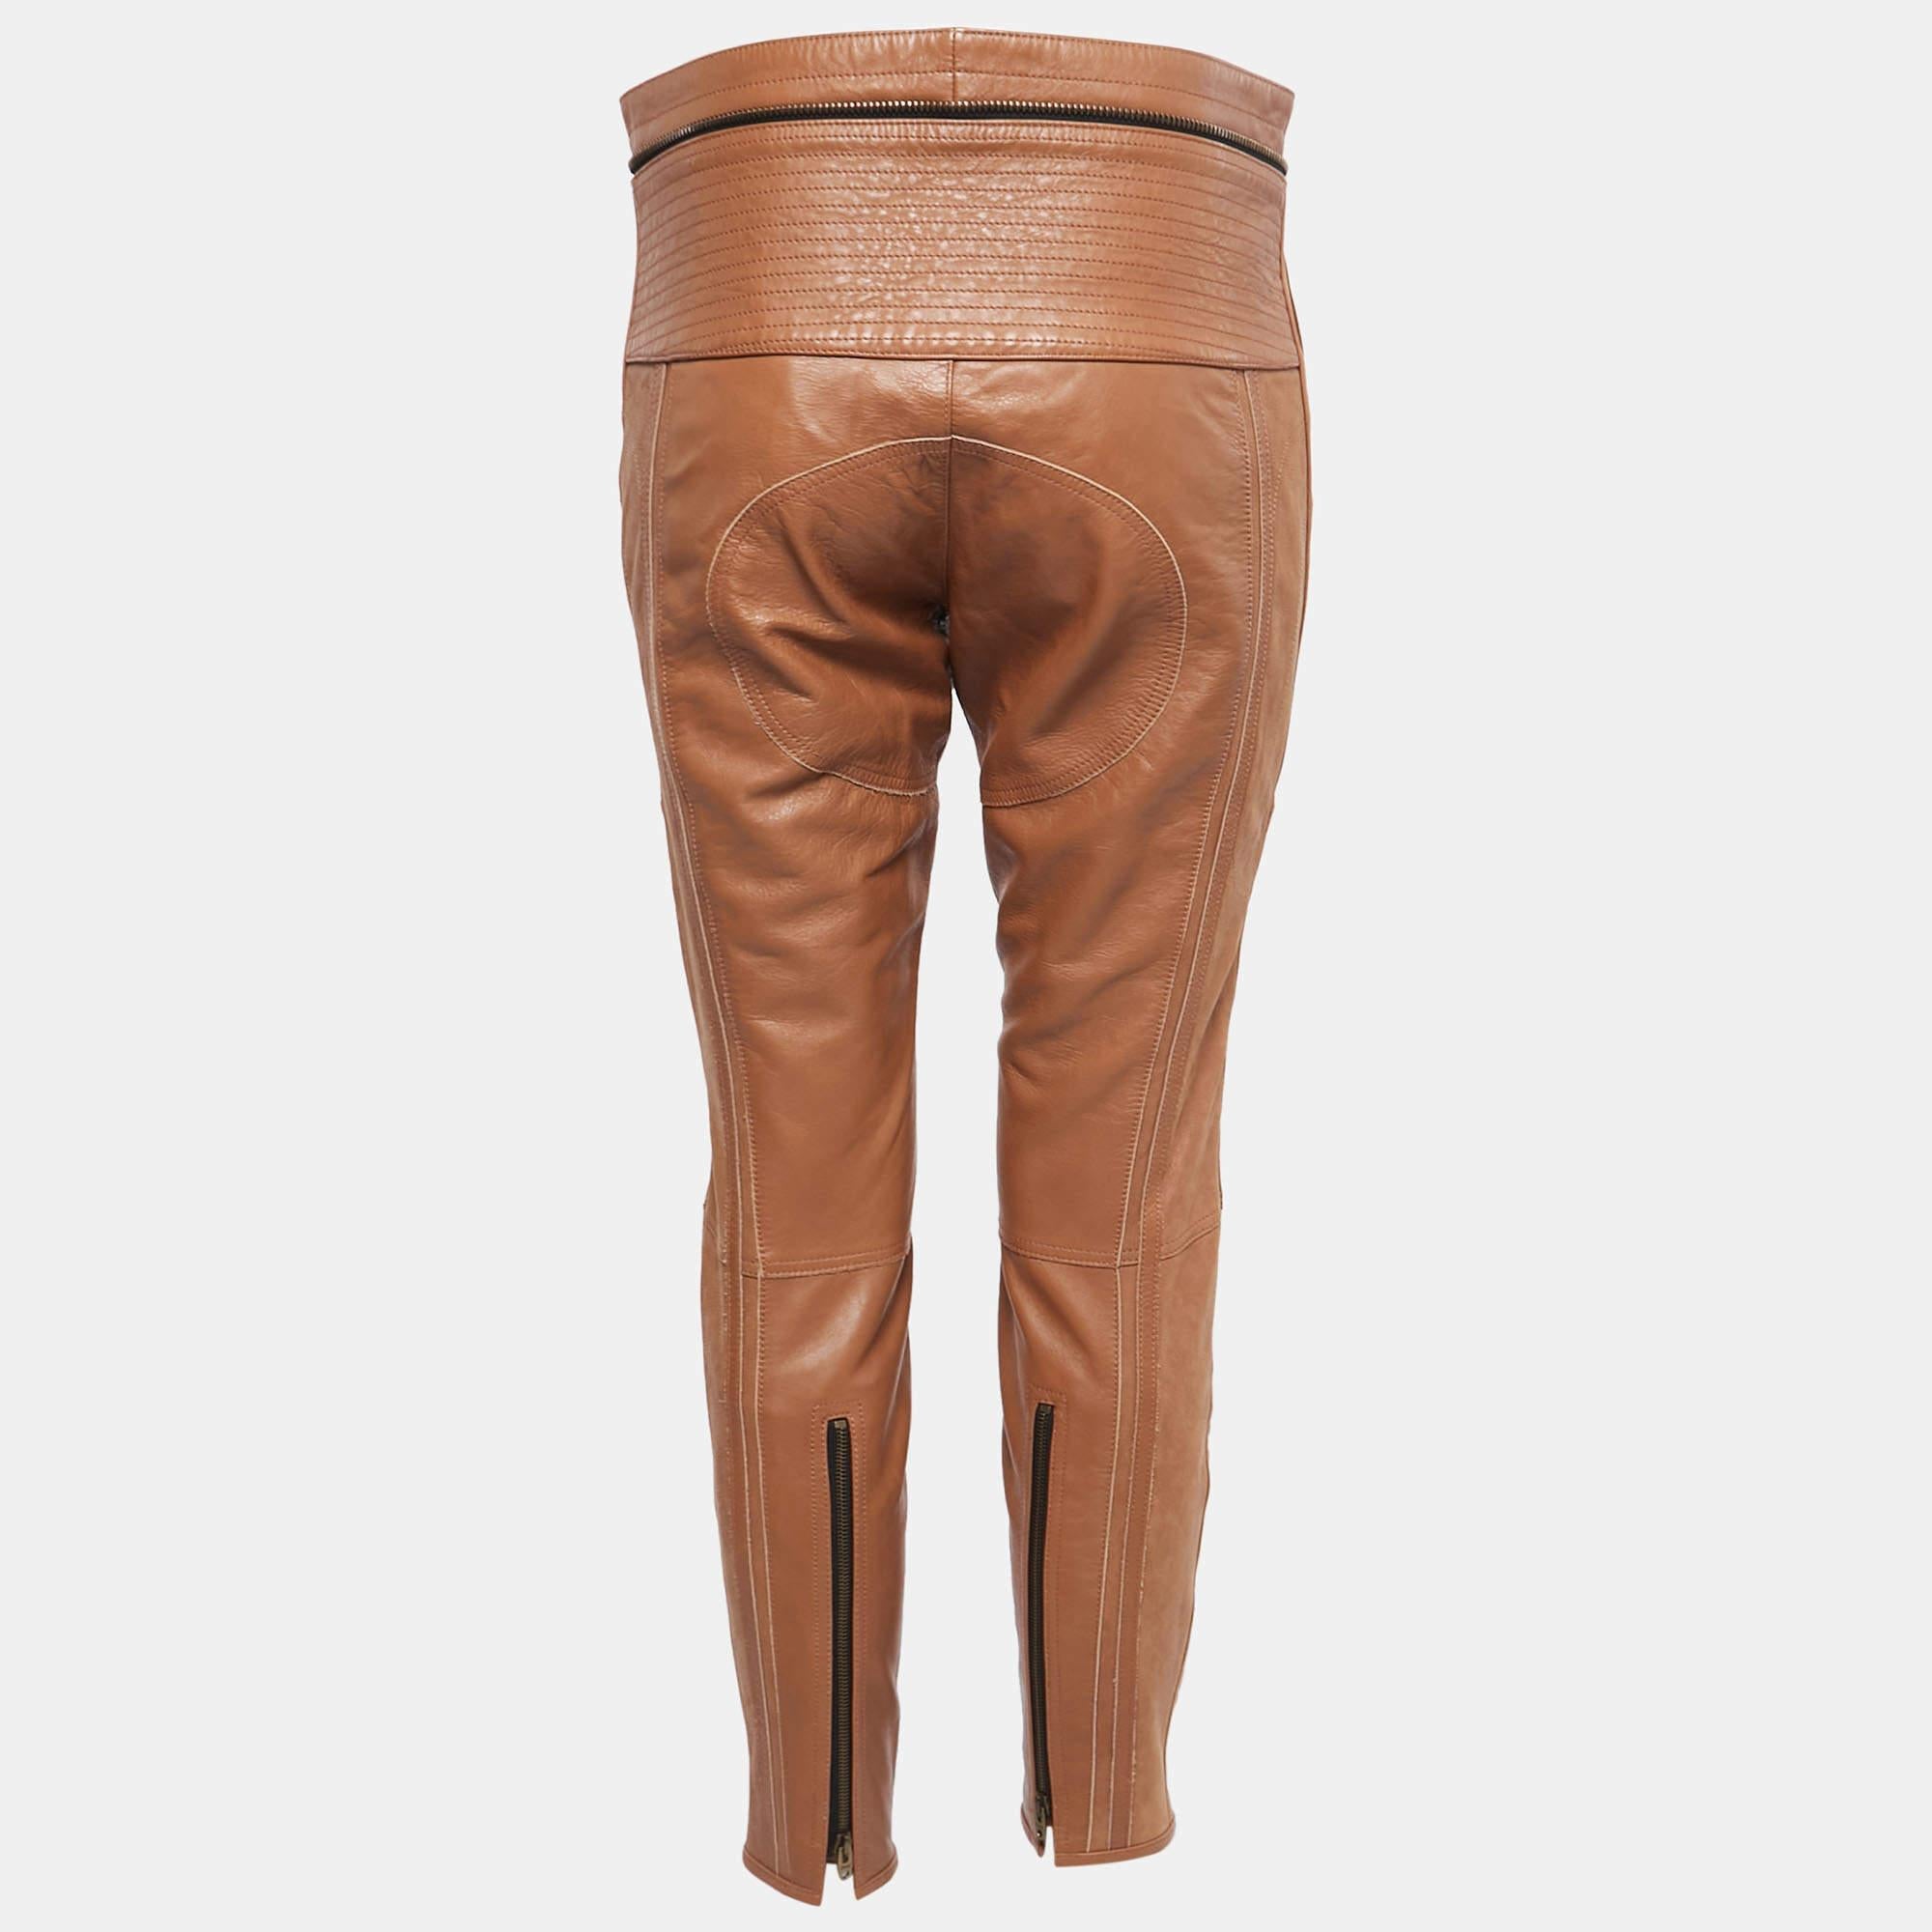 Can vous propose ce pantalon de motard suave que vous pourrez porter de jour comme de nuit. Cousu méticuleusement en cuir marron, ce pantalon présente une forme ajustée. Ils trouvent le juste équilibre entre le confort et la haute couture.

Comprend